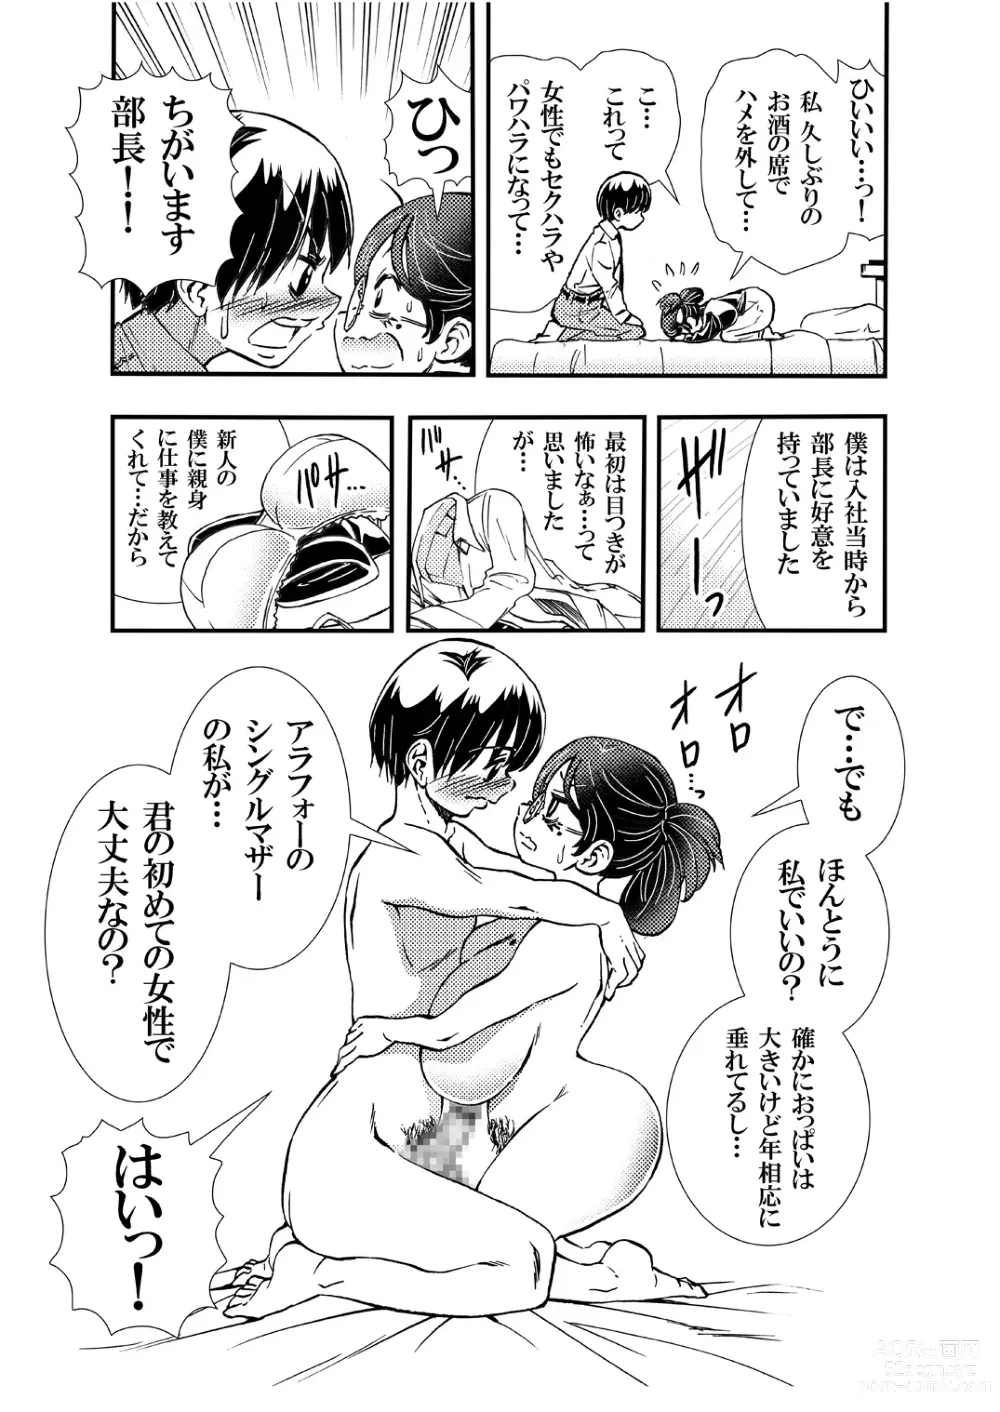 Page 9 of doujinshi Jitome Joshi Onna ni Modoru